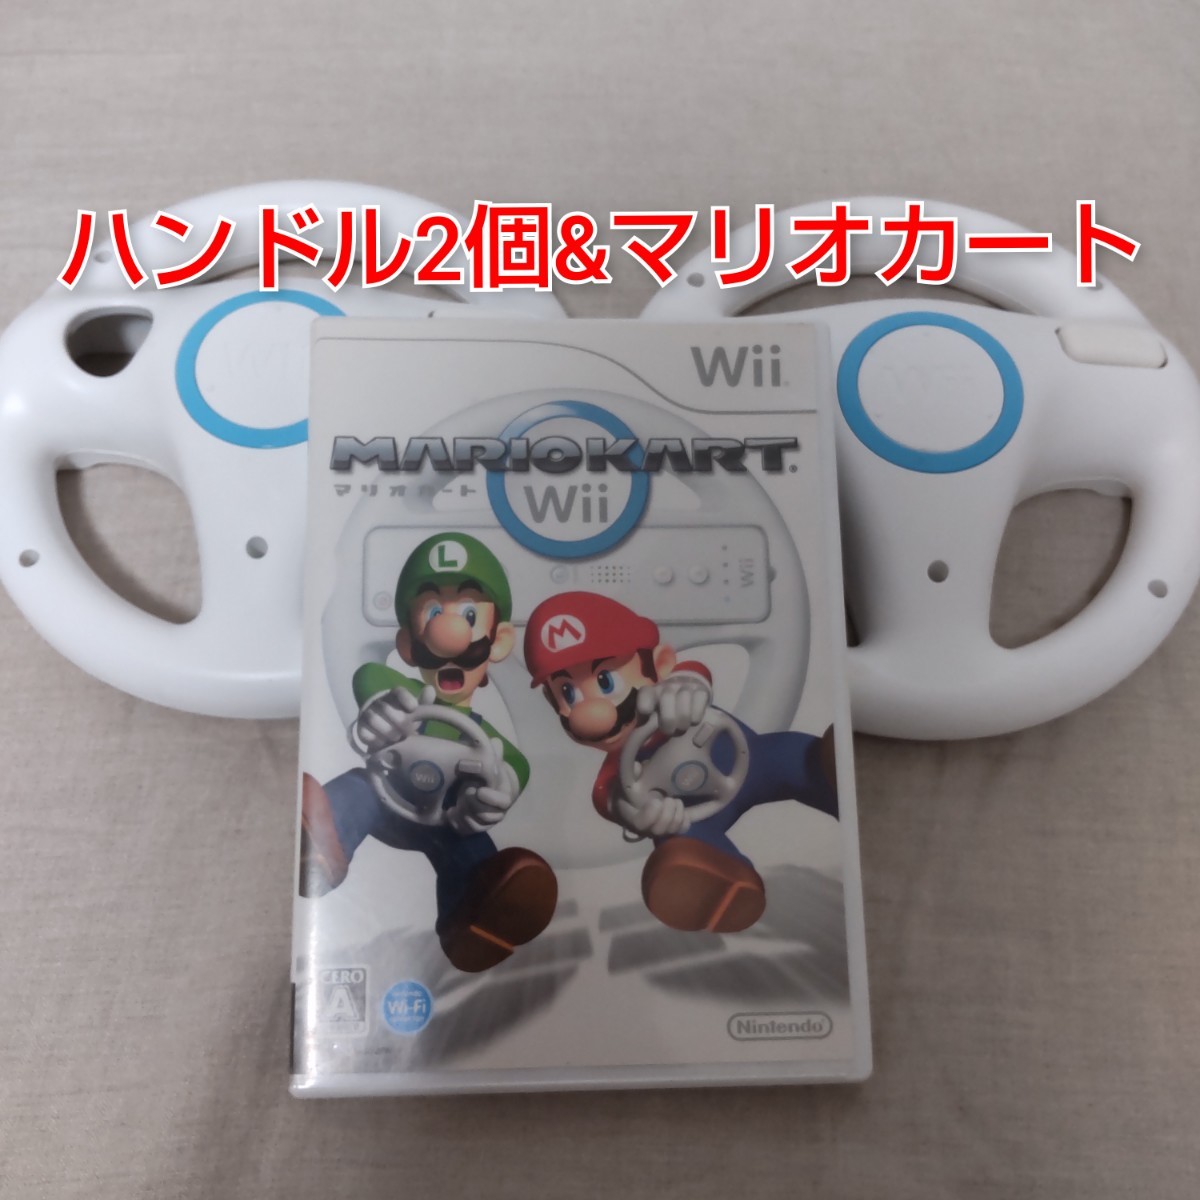 ②任天堂純正品 Wii ハンドル2個 & マリオカートWii ソフト セット